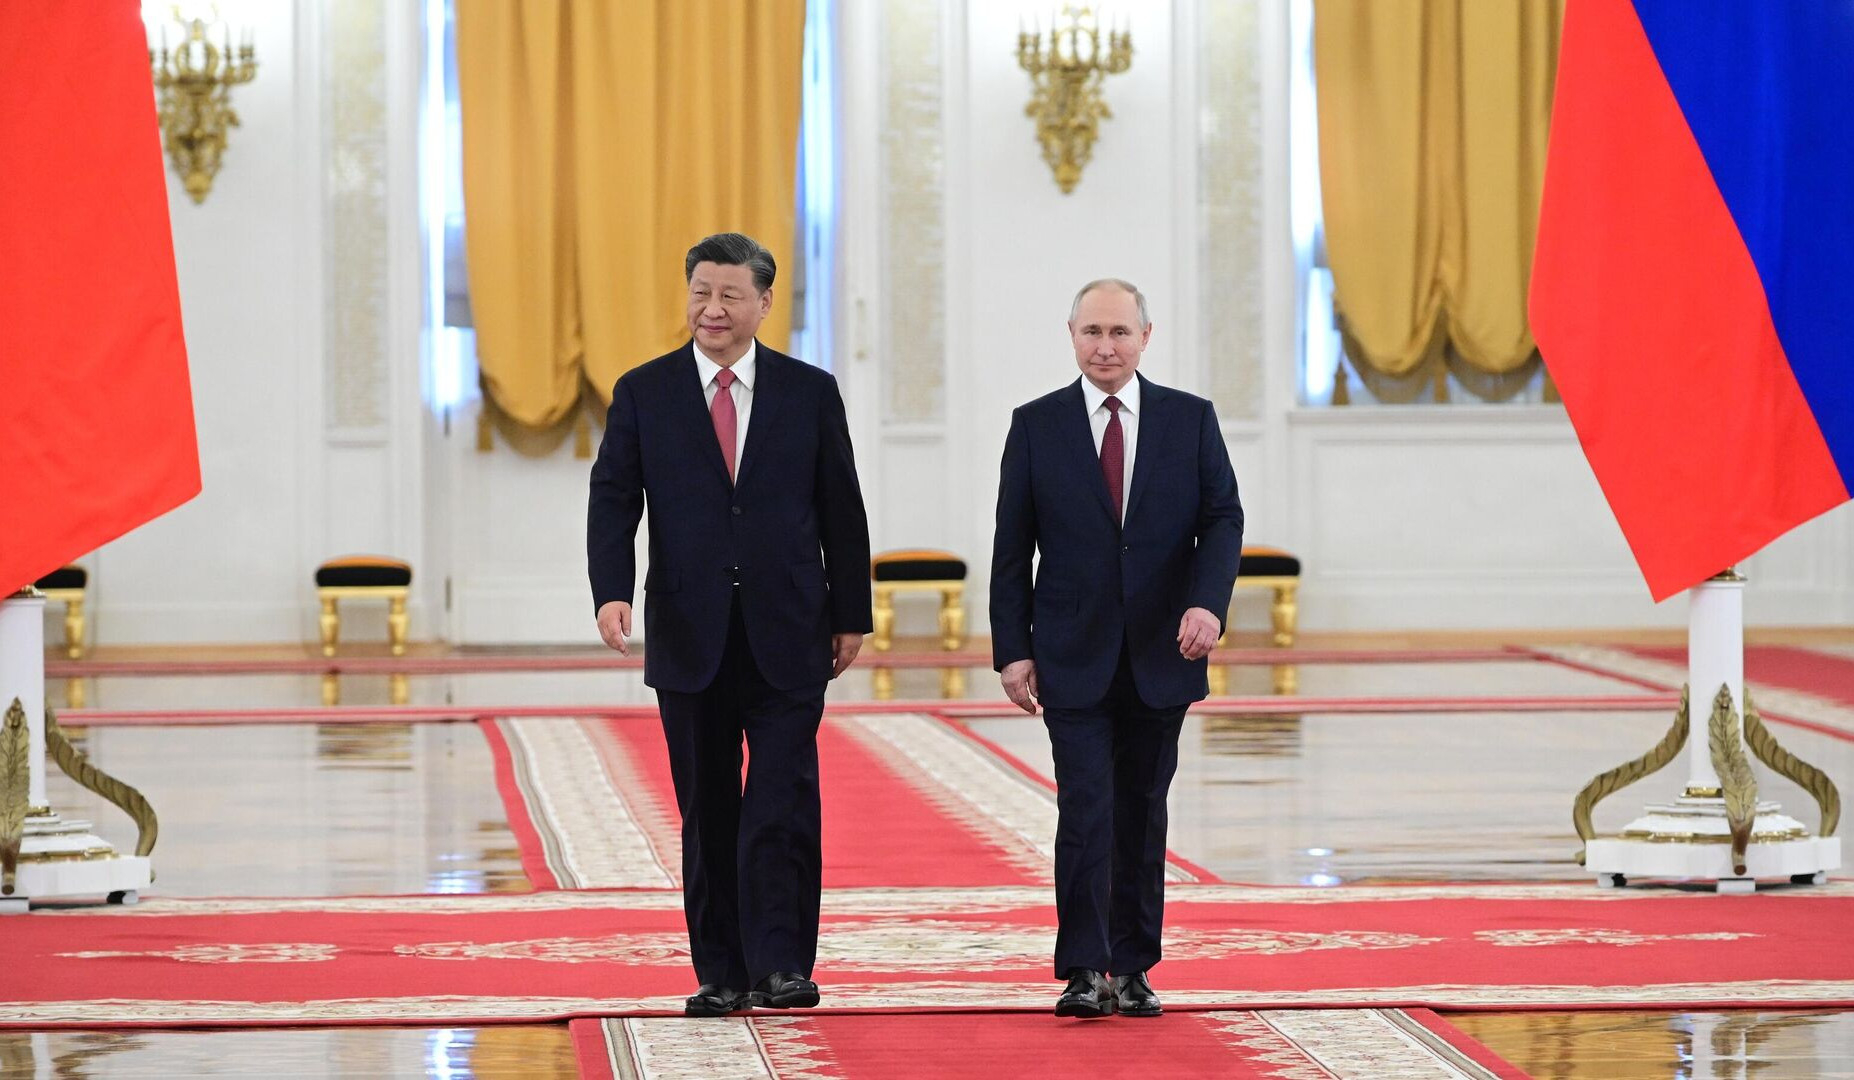 Сотрудничество между Россией и Китаем будет развиваться: Владимир Путин после встречи с Си Цзиньпином